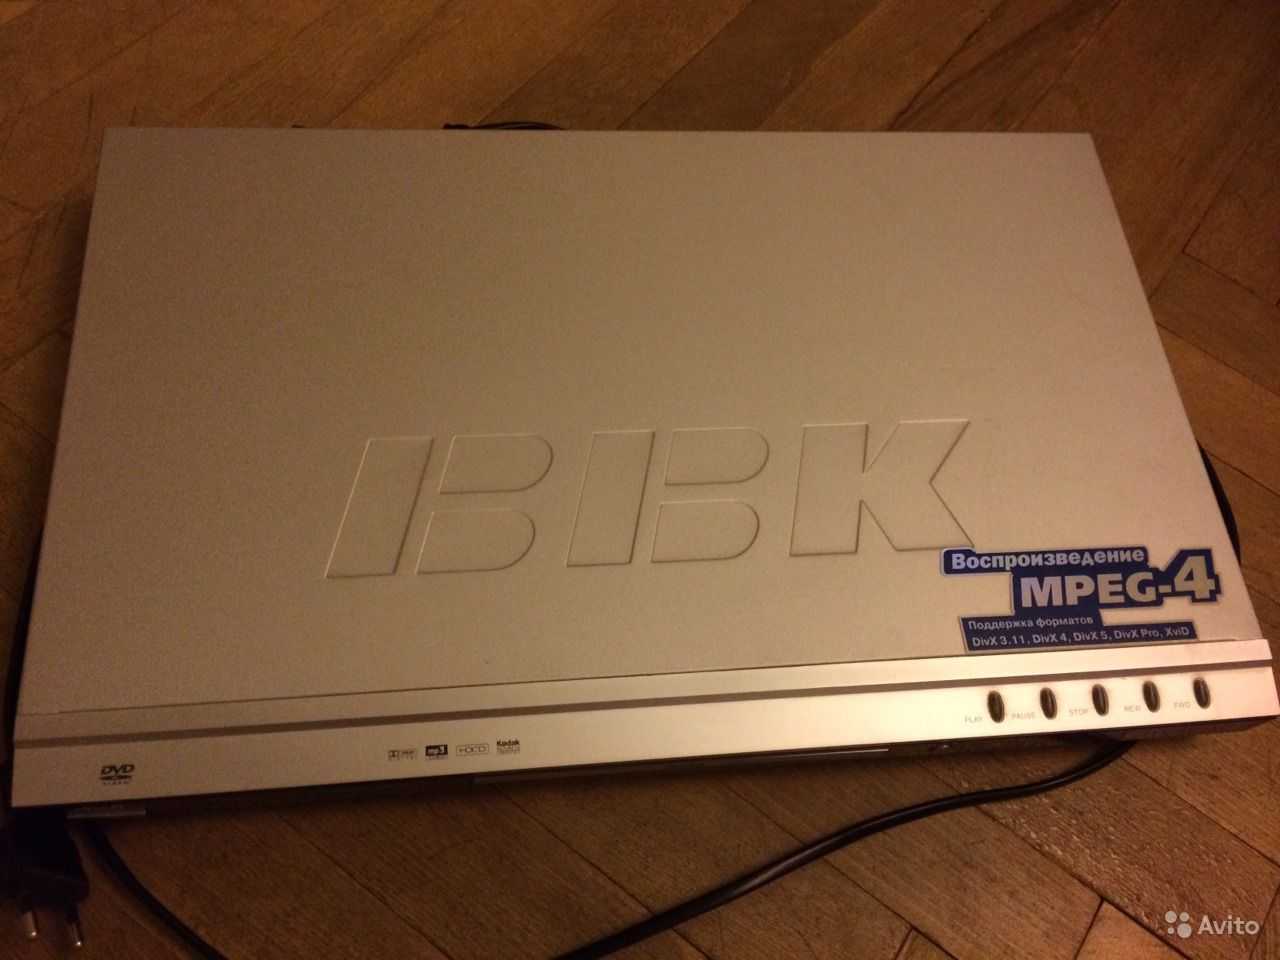 Bbk lem2484f (черный) - купить , скидки, цена, отзывы, обзор, характеристики - телевизоры